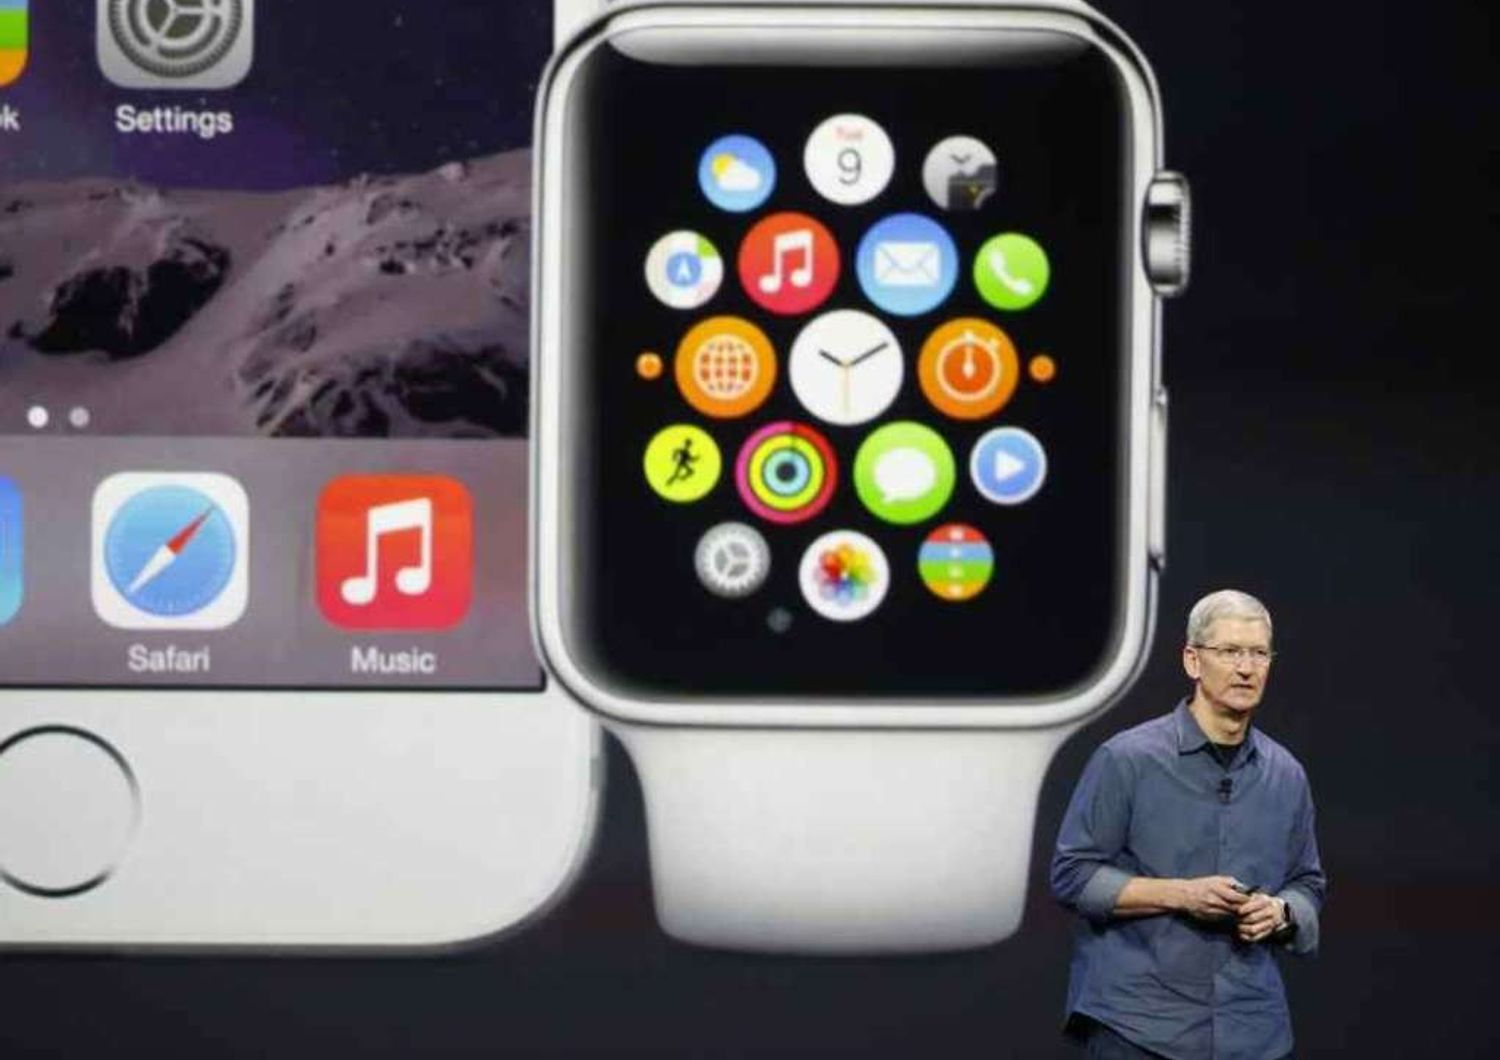 Svelati i nuovi iPhone6 e 6 Plus, c'e' anche l'Apple Watch